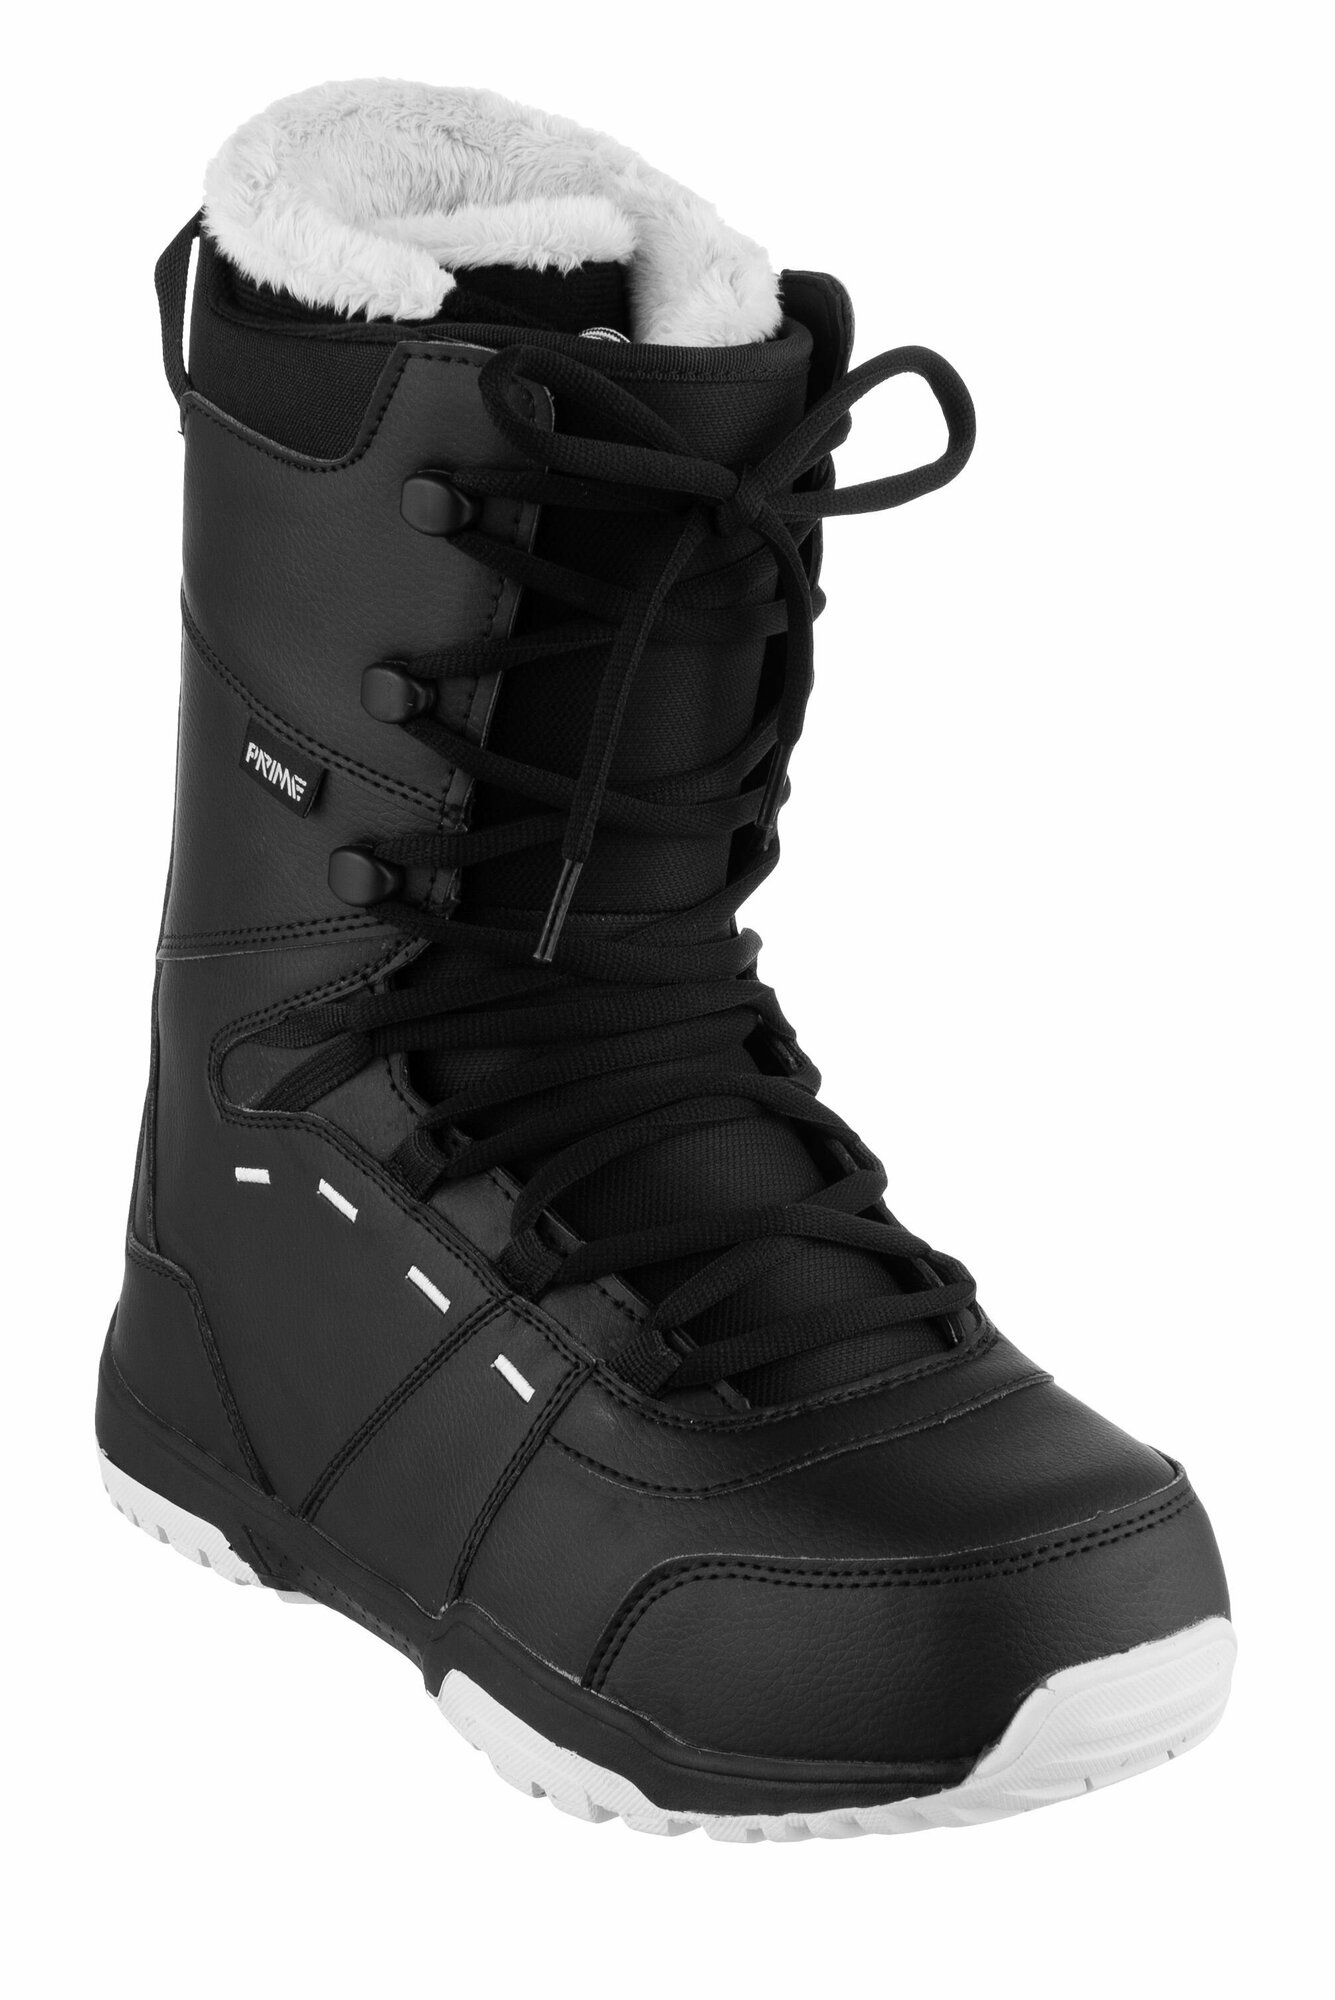 Ботинки сноубордические PRIME FUN-F1 Black (43 RU / 29 cm)